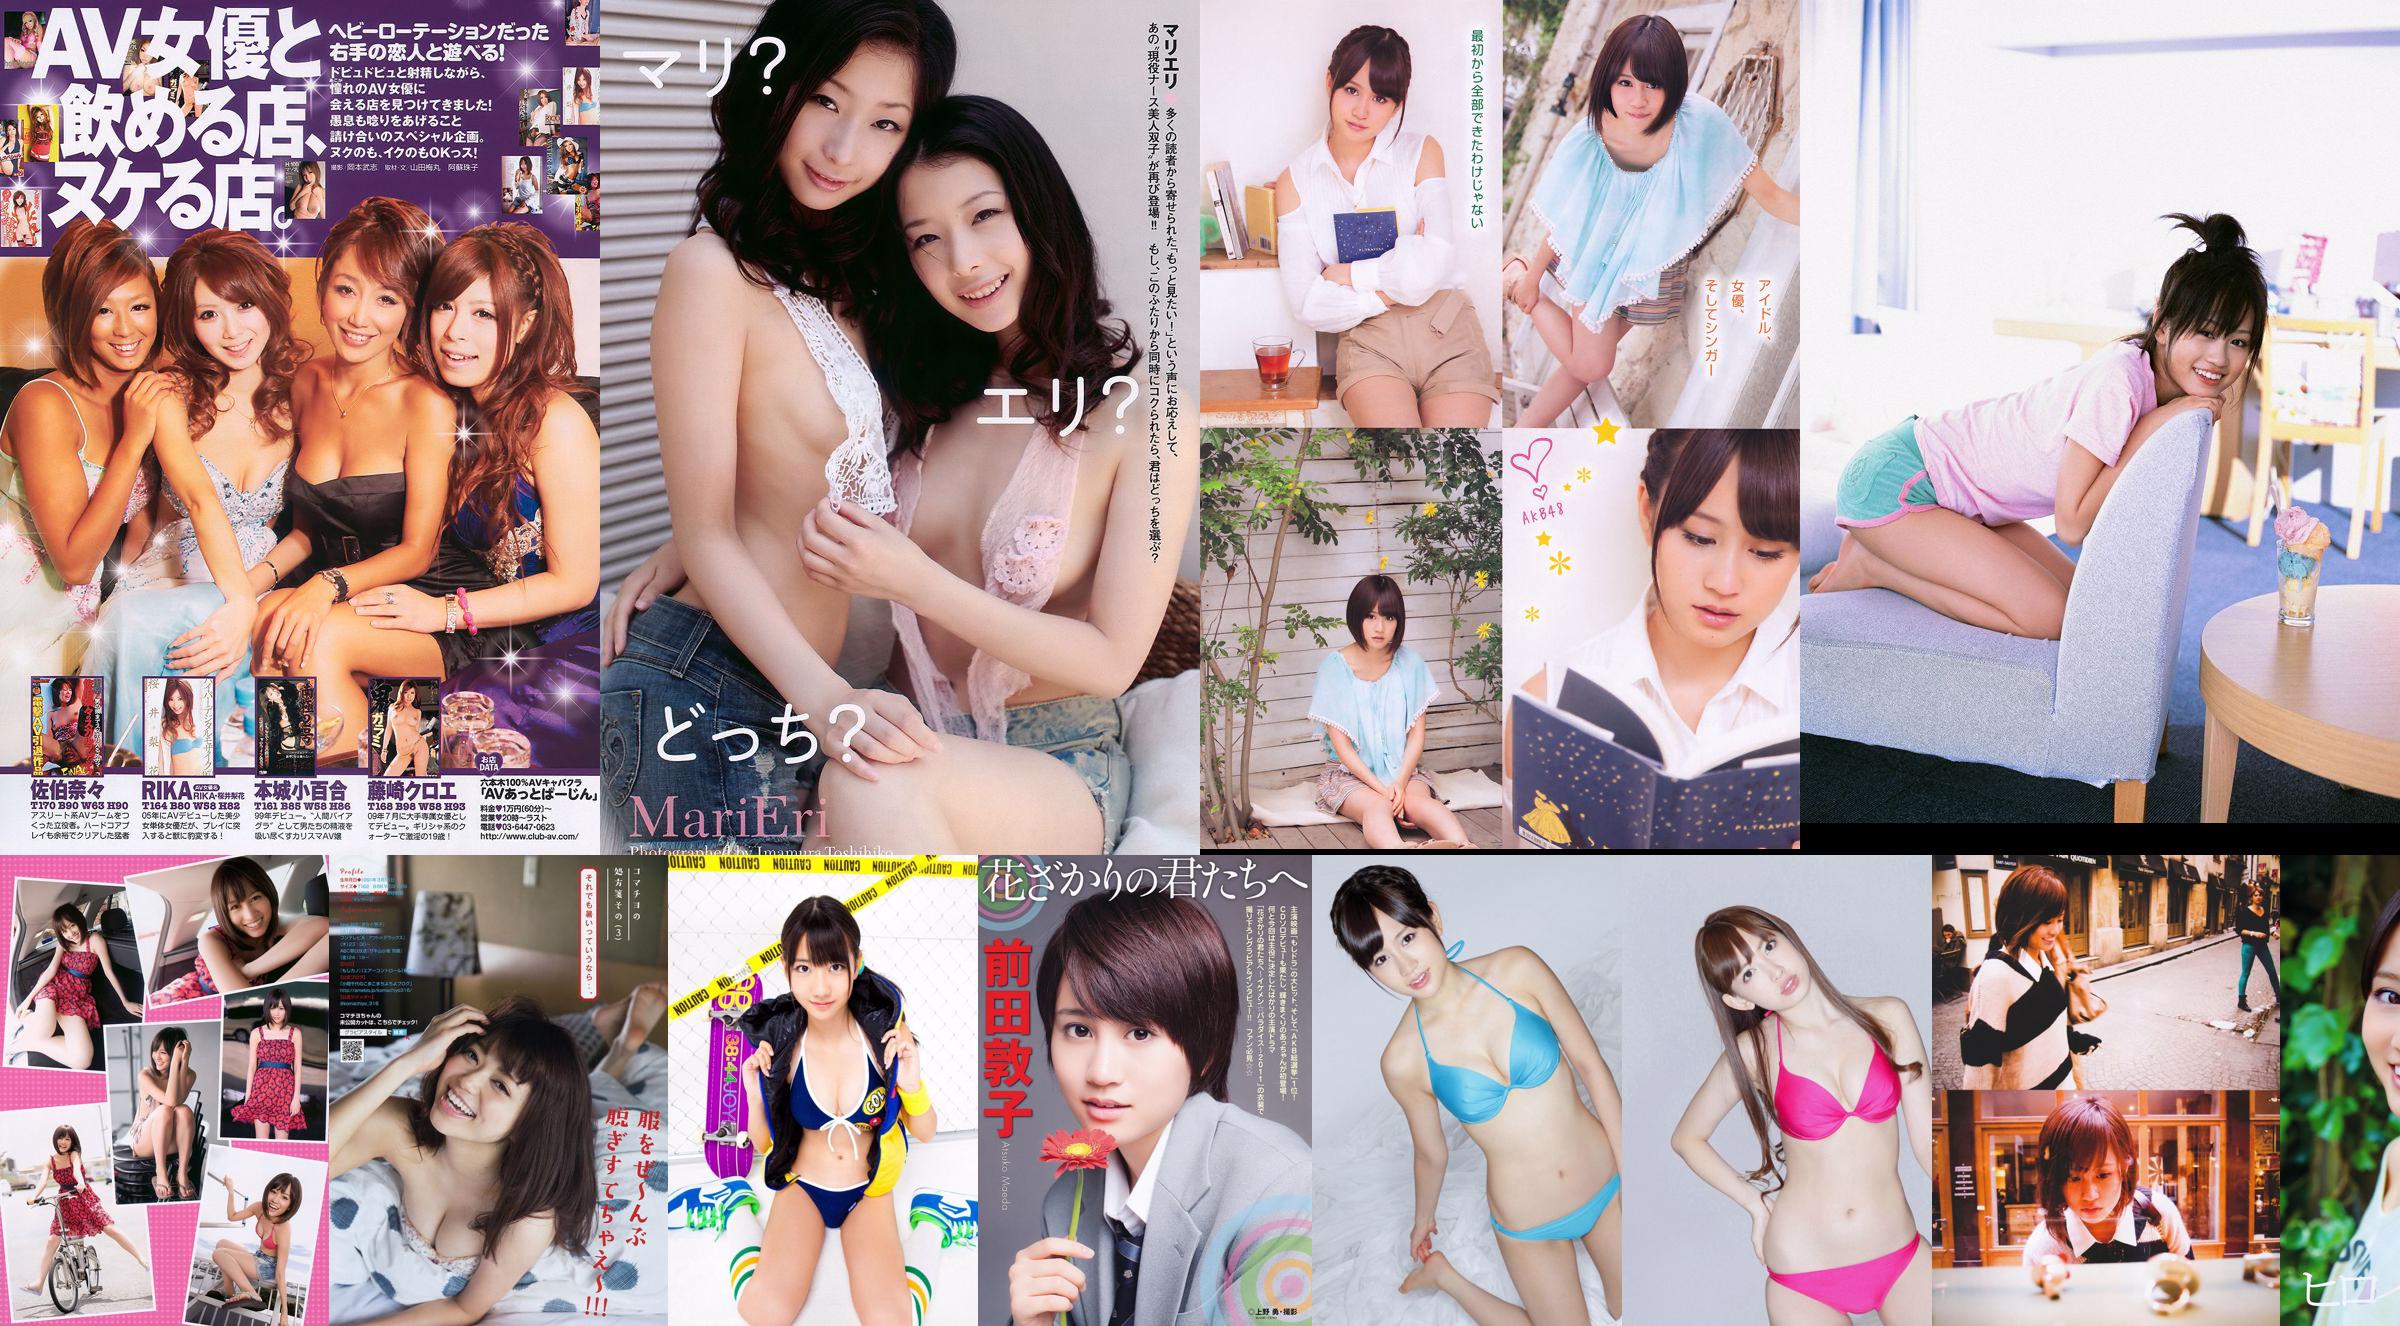 Atsuko Maeda Rima Nishizaki Anna Konno Mitsu Dan [Playboy Mingguan] 2012 No.27 Foto Mitsu Dan No.9ea554 Halaman 4